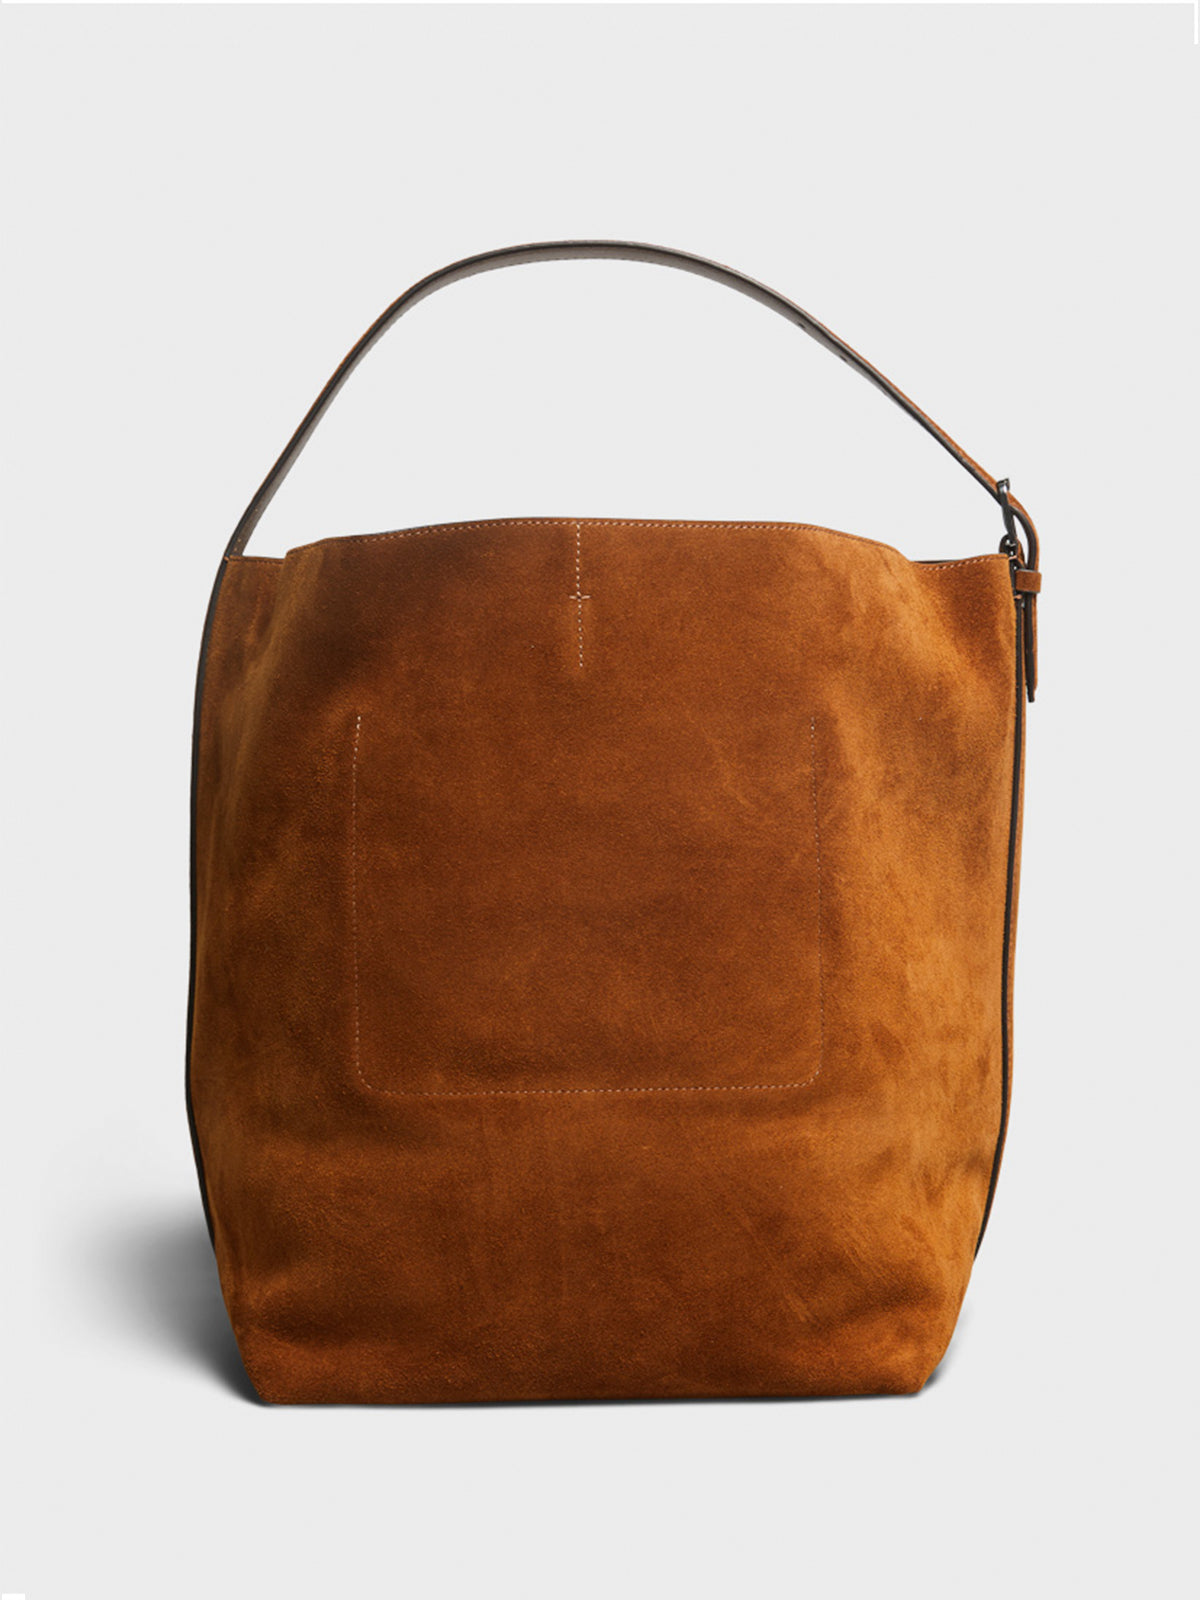 Belted Tote Bag in Tan Brown